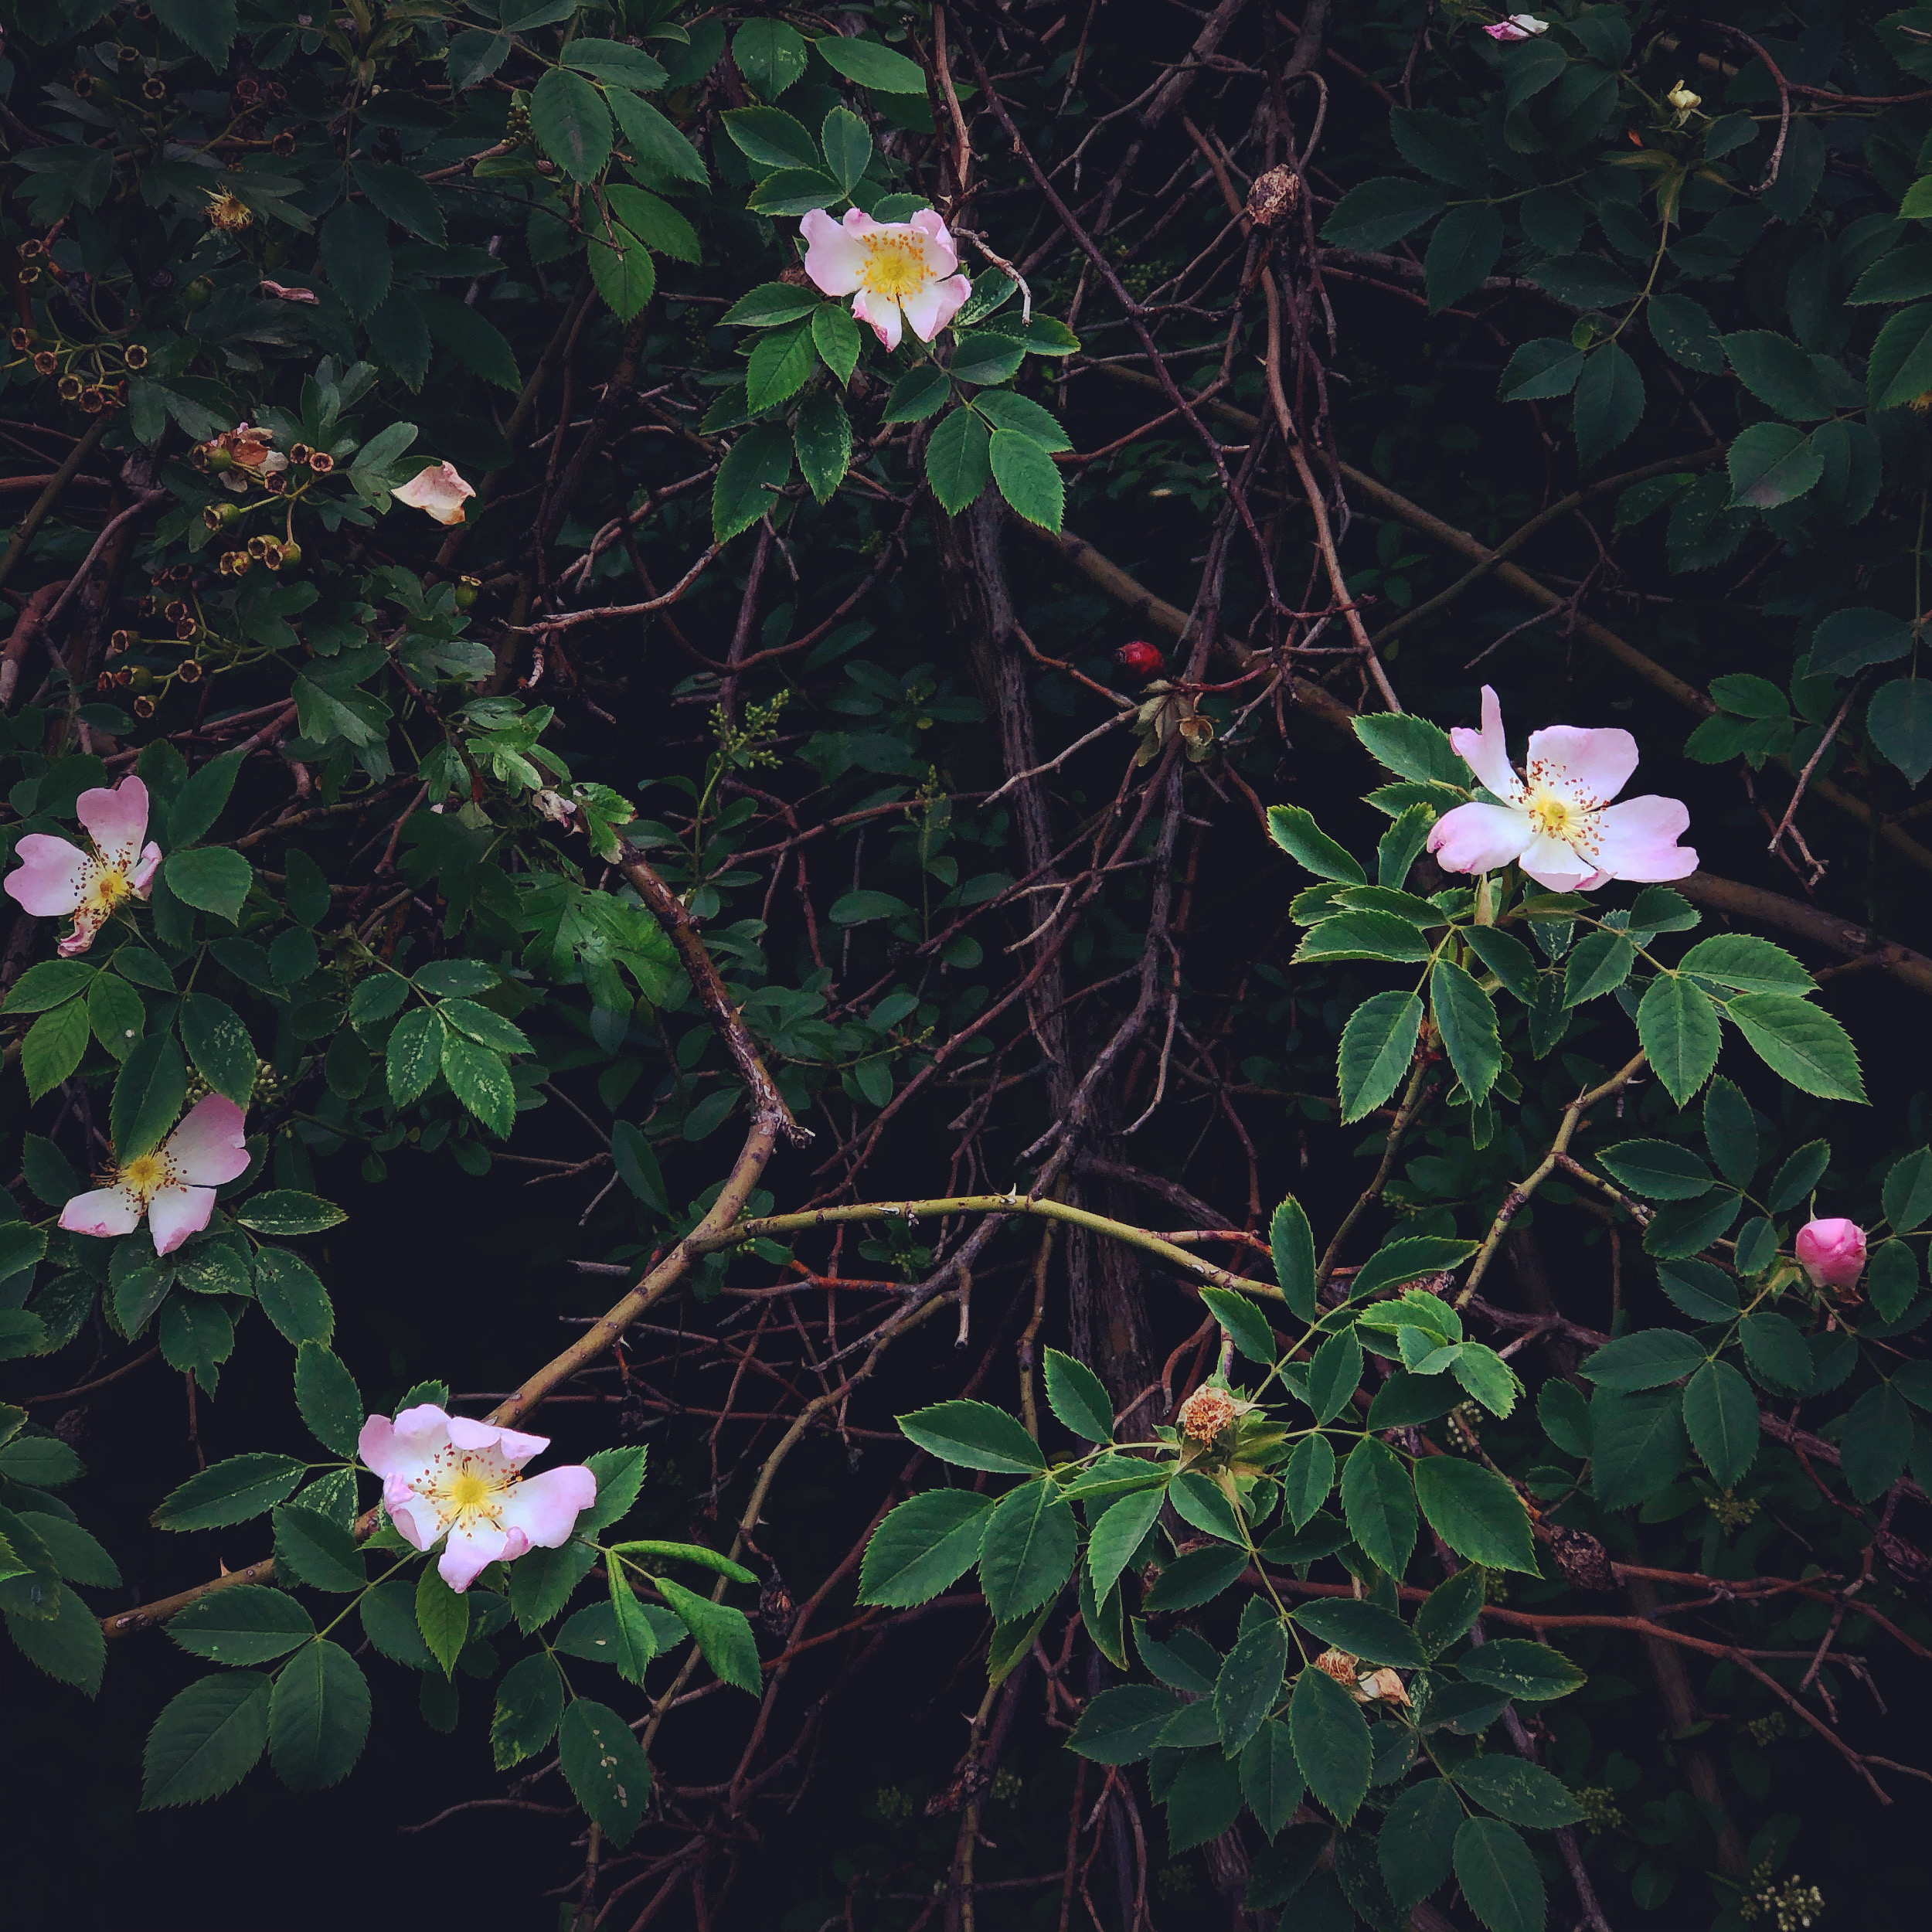 Flowering grove